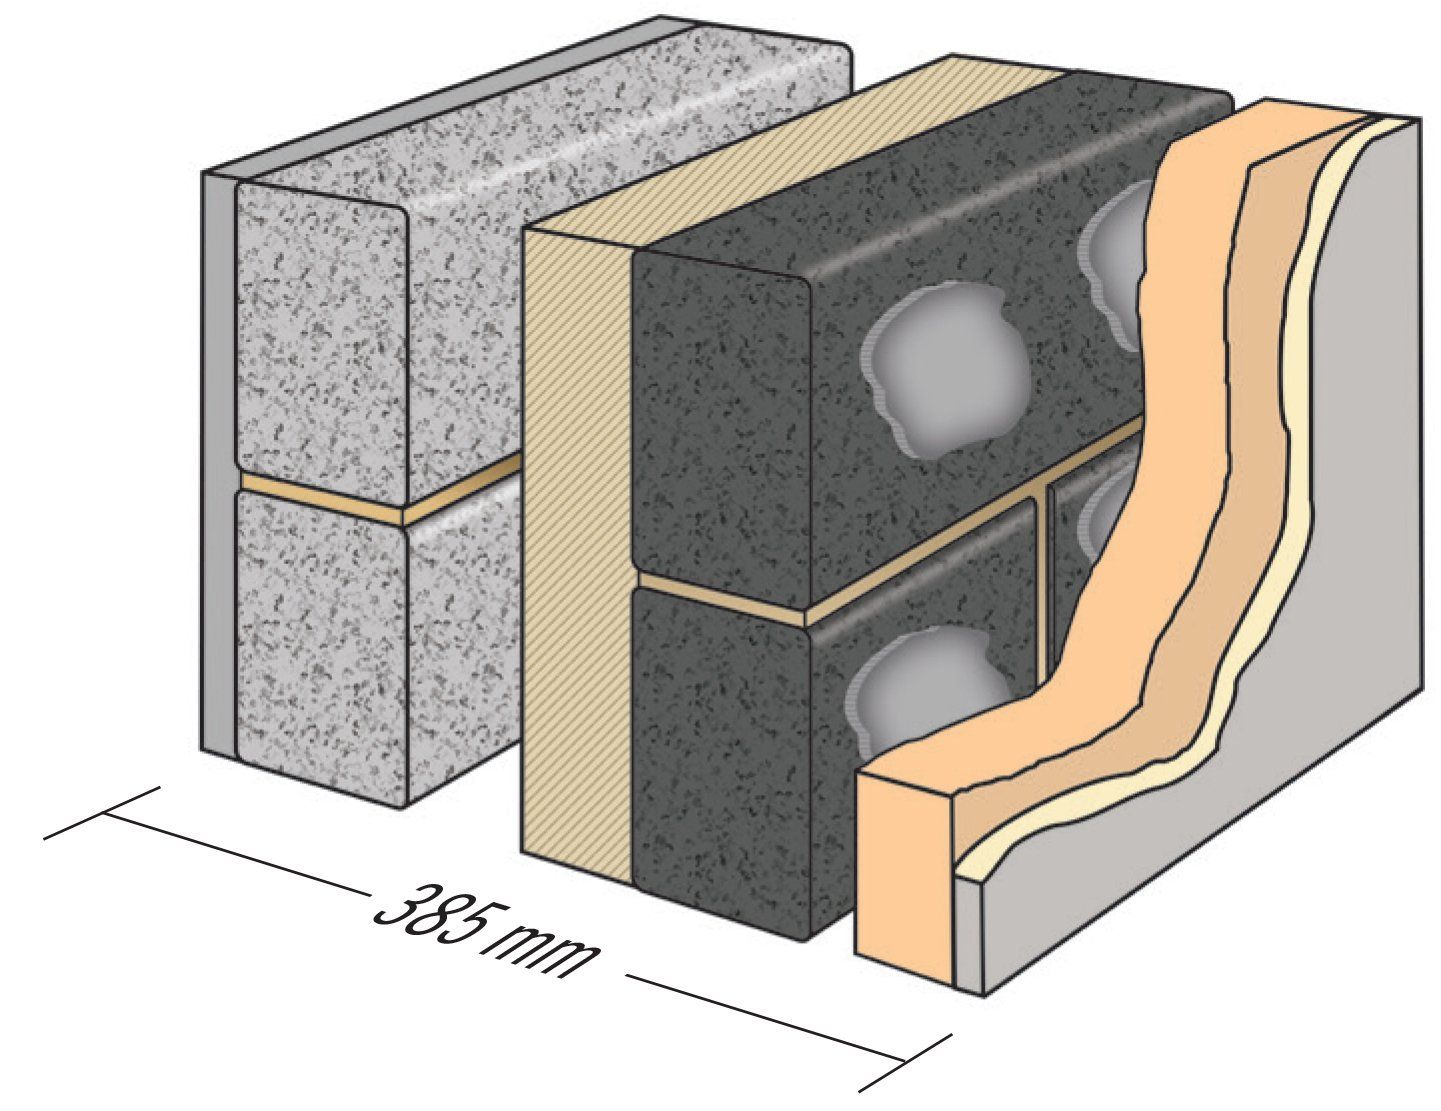 Fibotherm insulating blocks/bricks 3.6/mm² to BS EN 771-3